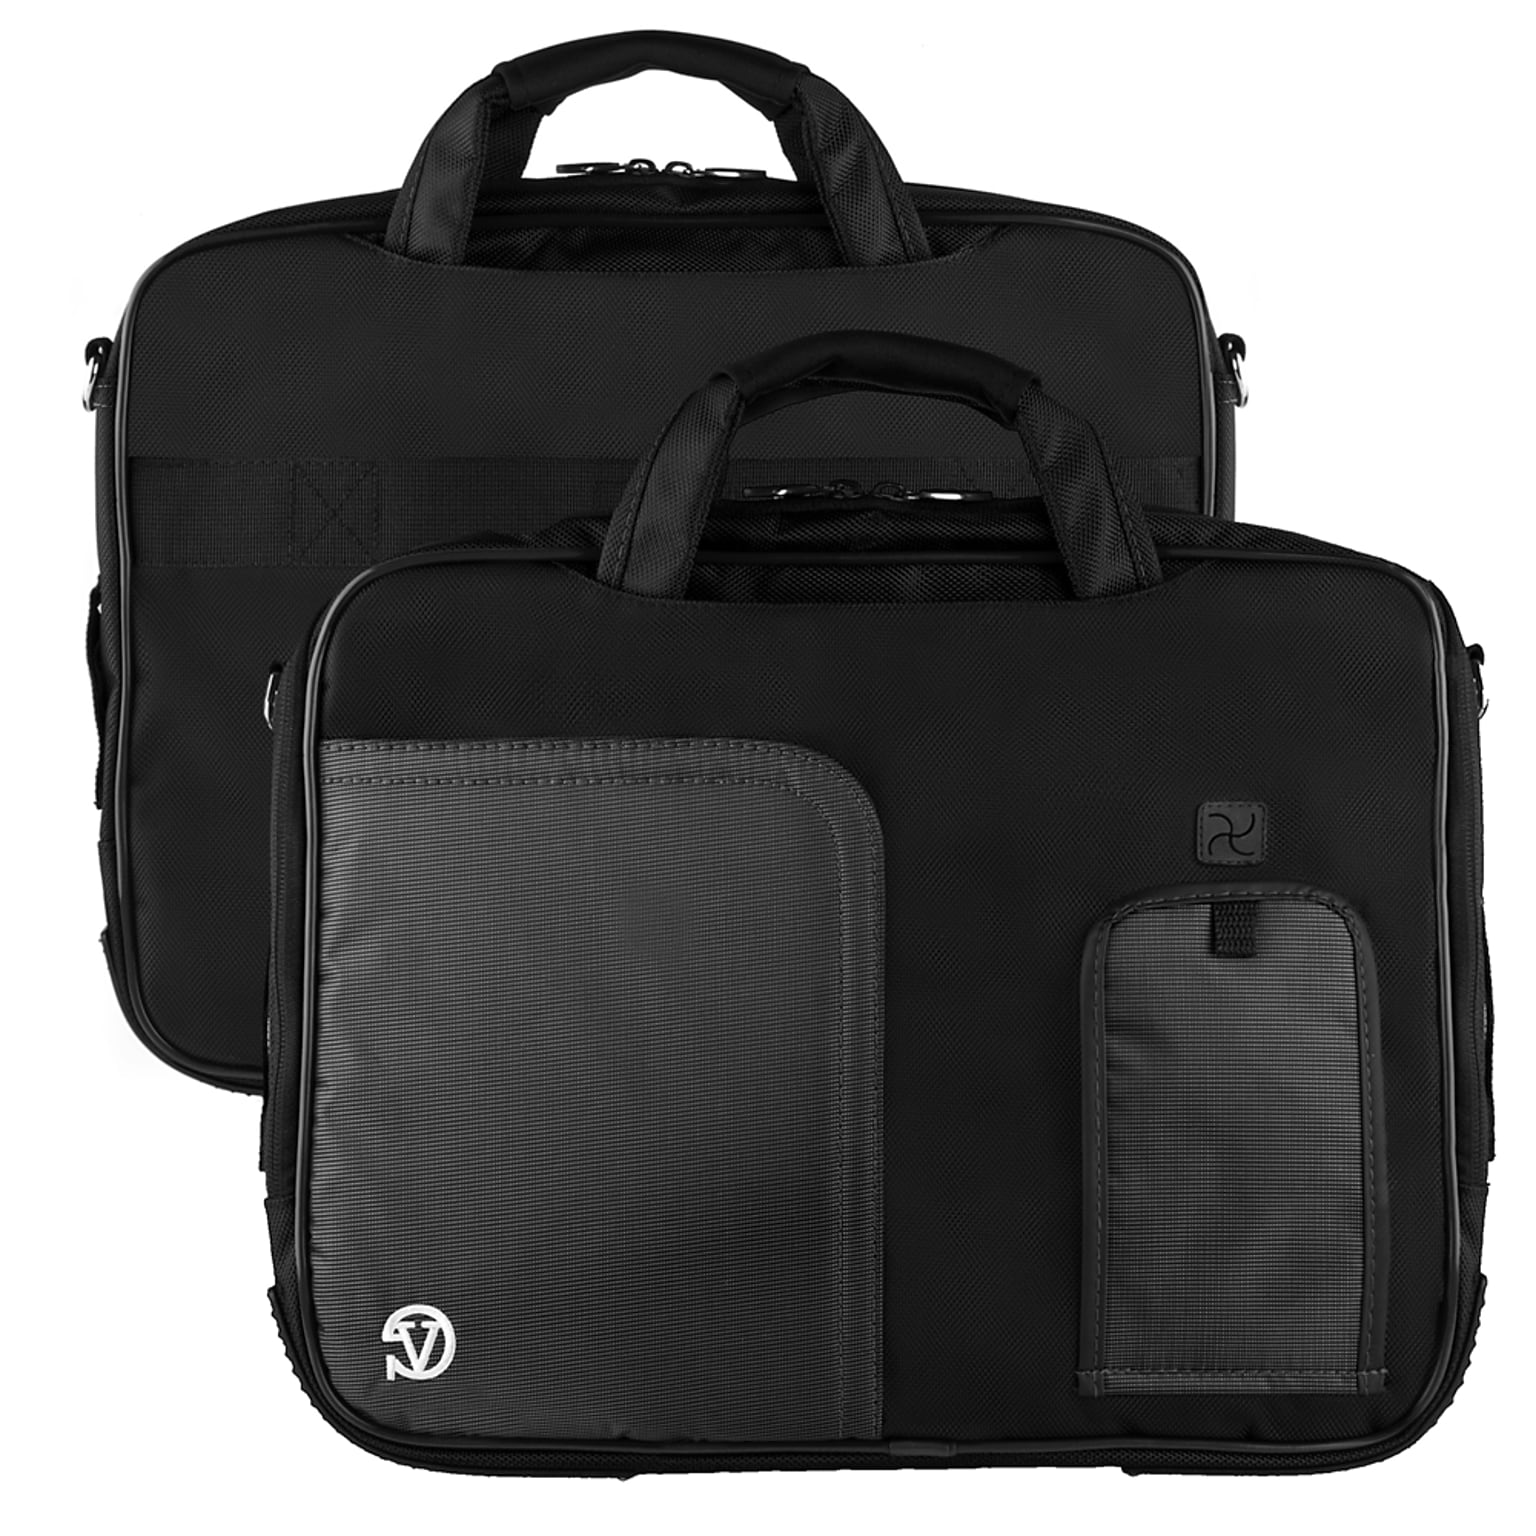 Vangoddy Pindar Laptop Sleeve Messenger Shoulder Bag Fits up to 13 Laptops - Medium (Black)